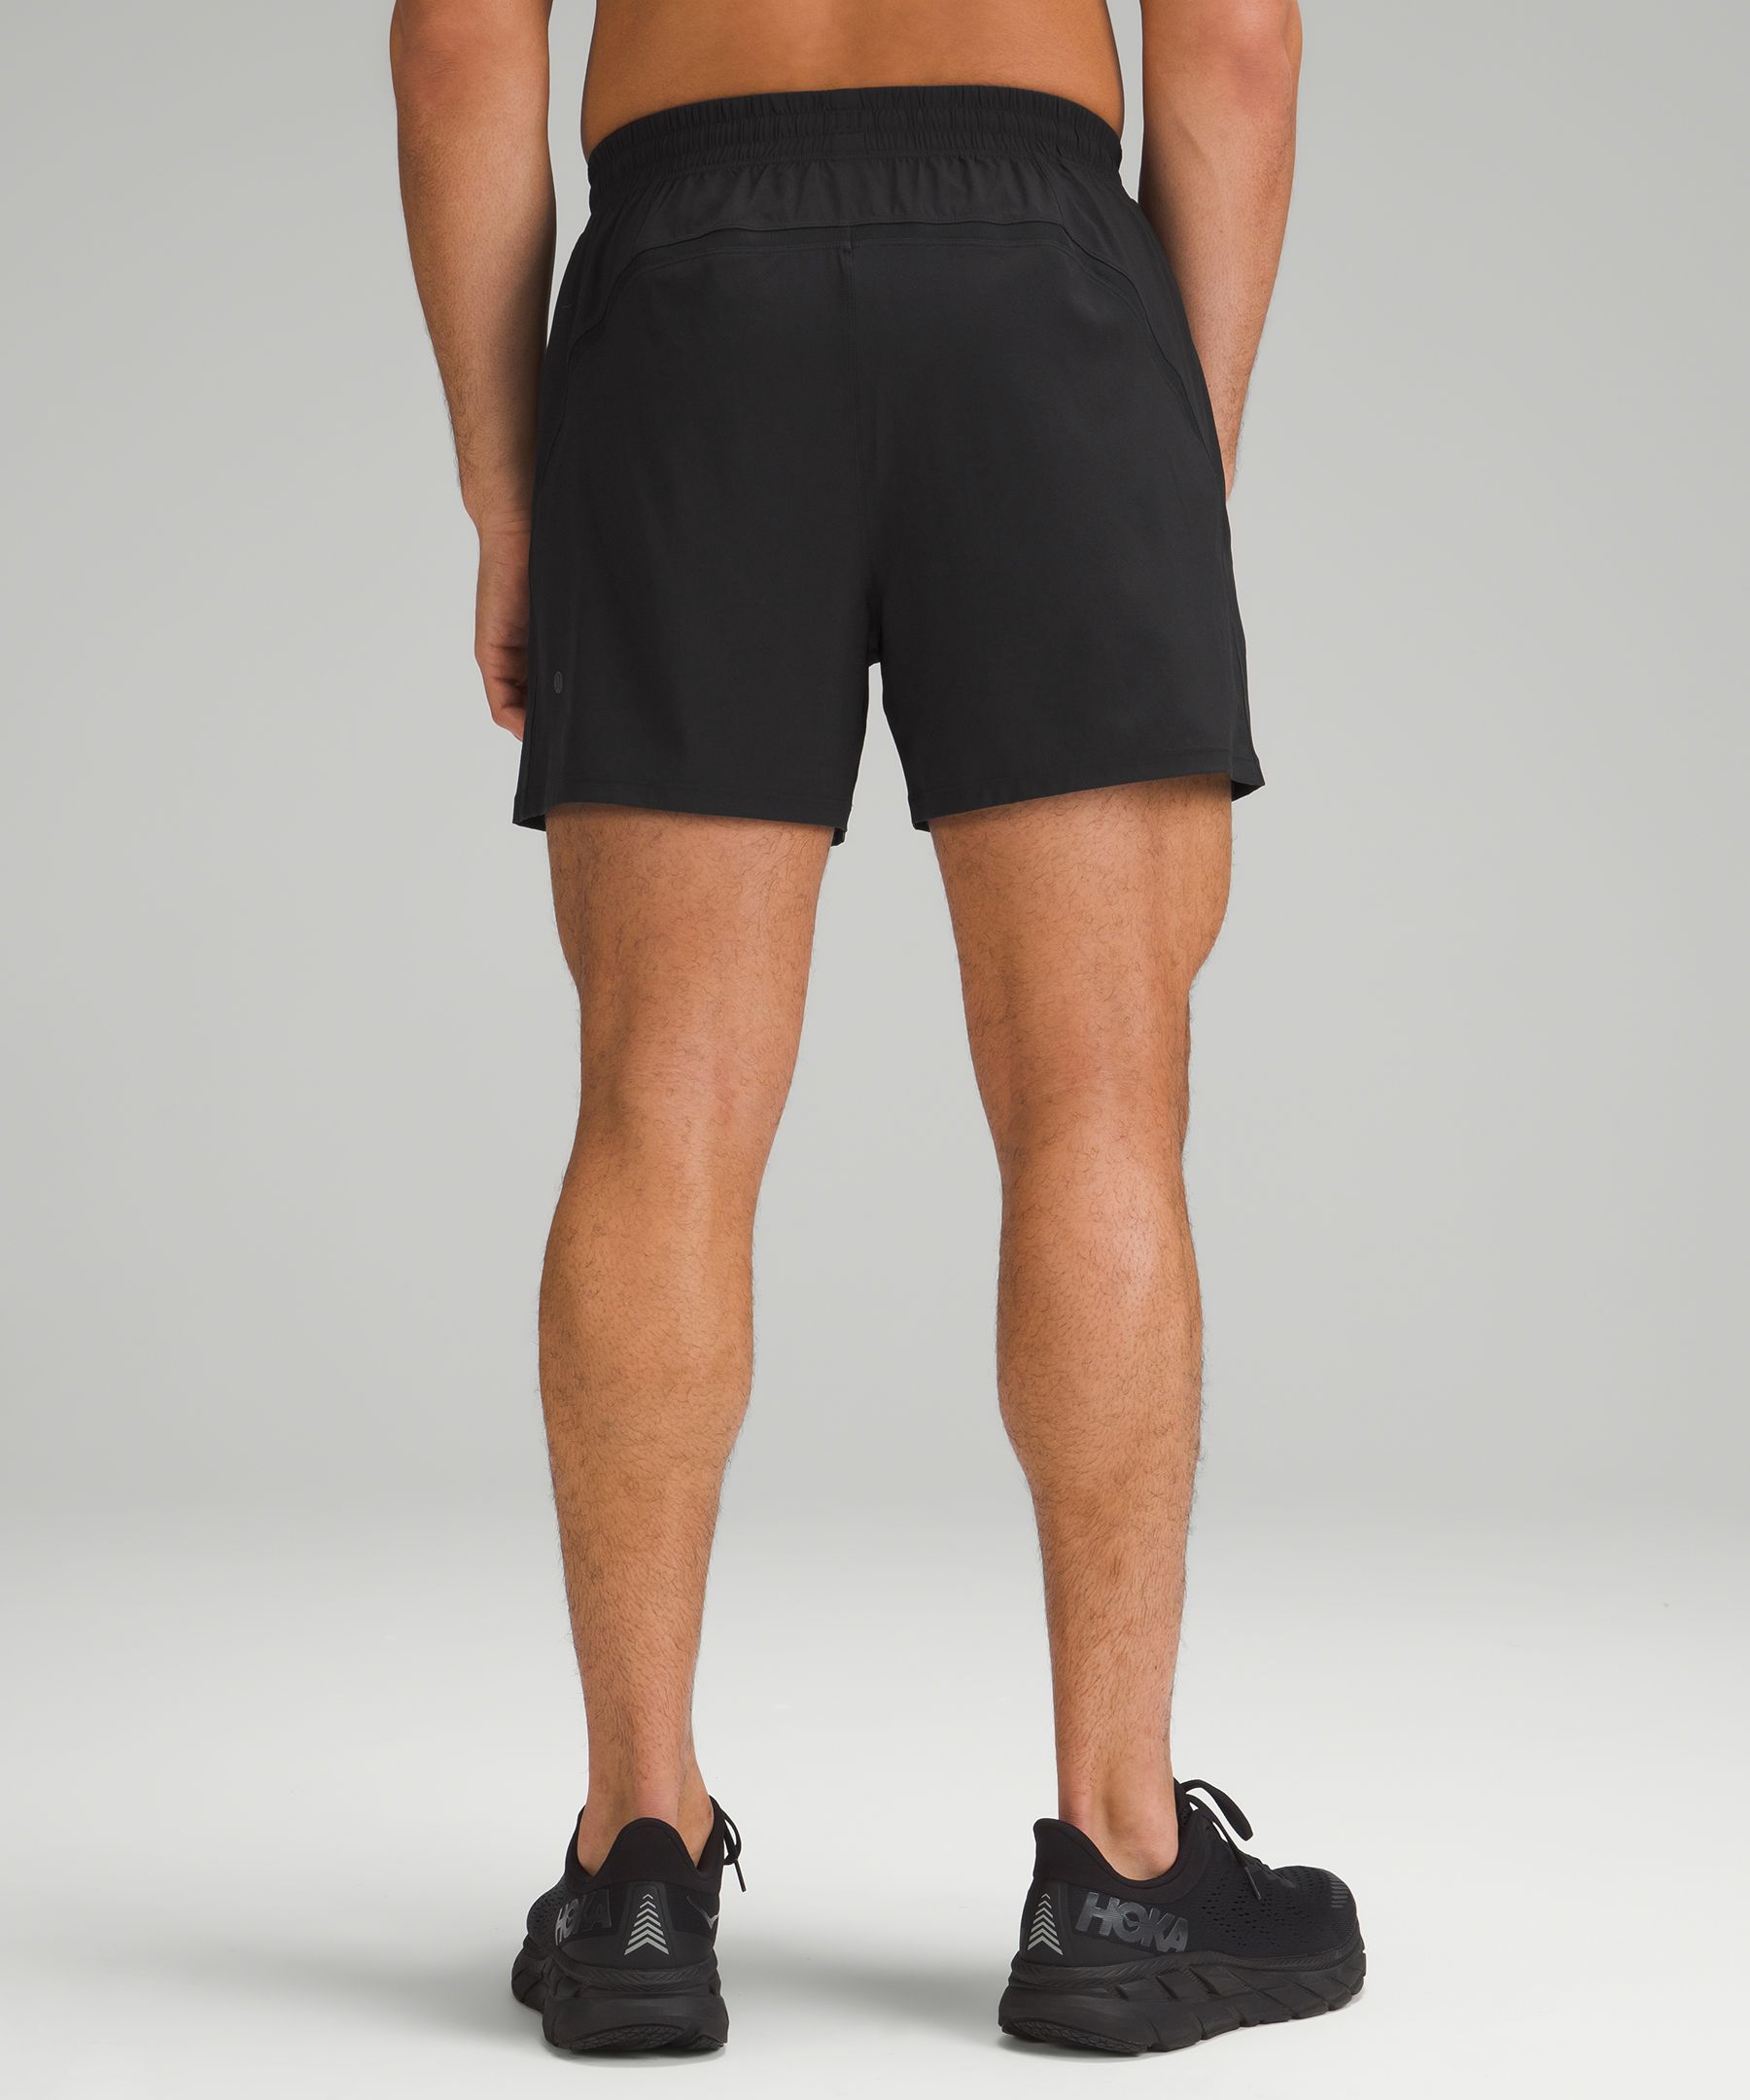 Lululemon Black 5” size 6 Shorts